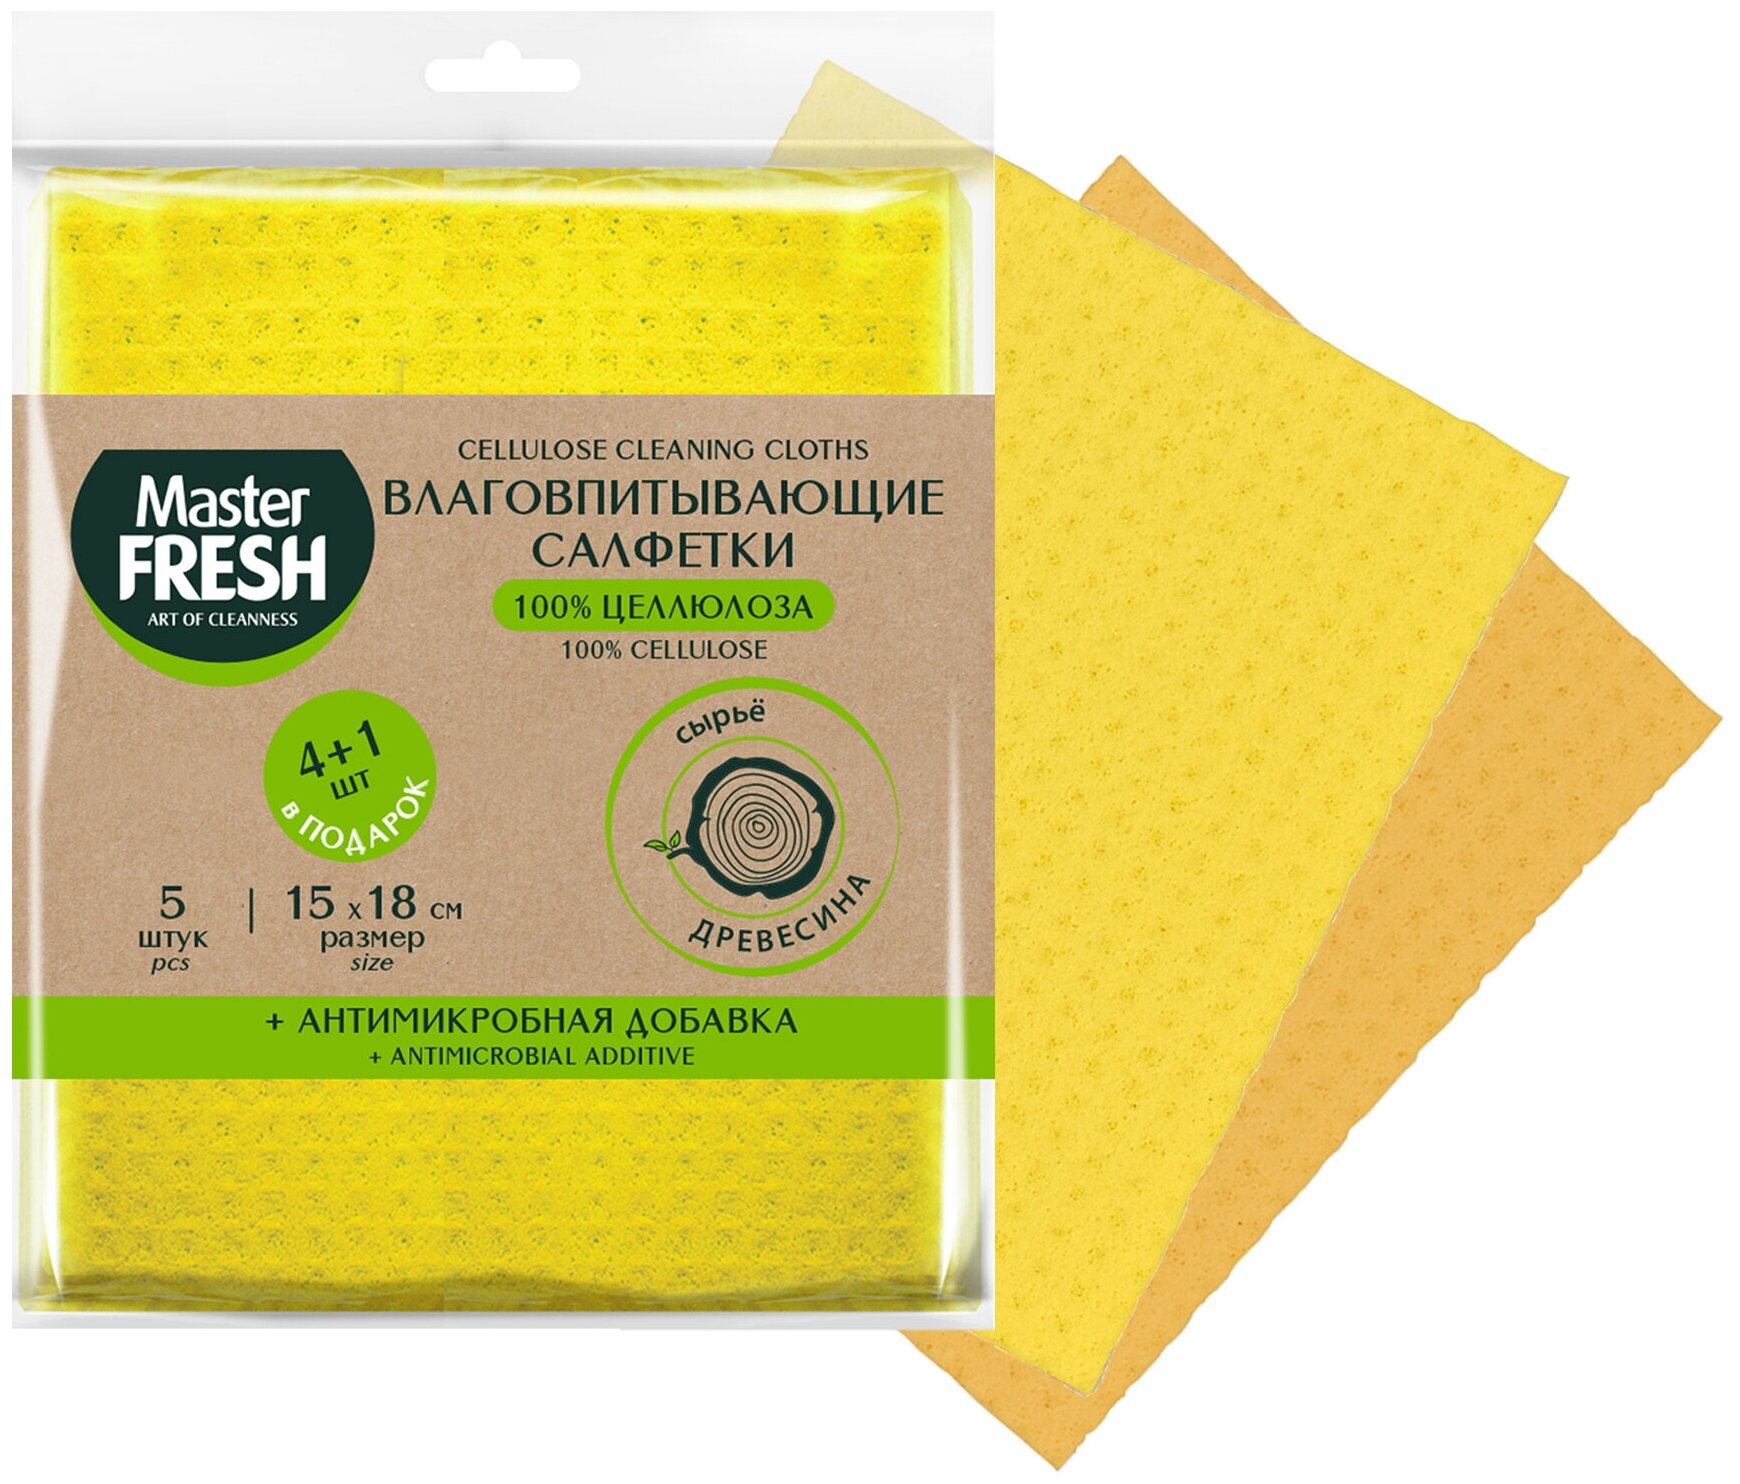 Промо Master FRESH ЭКО салфетки целлюлозные + Антимикробная добавка 15*18см 4+1 шт в подарок